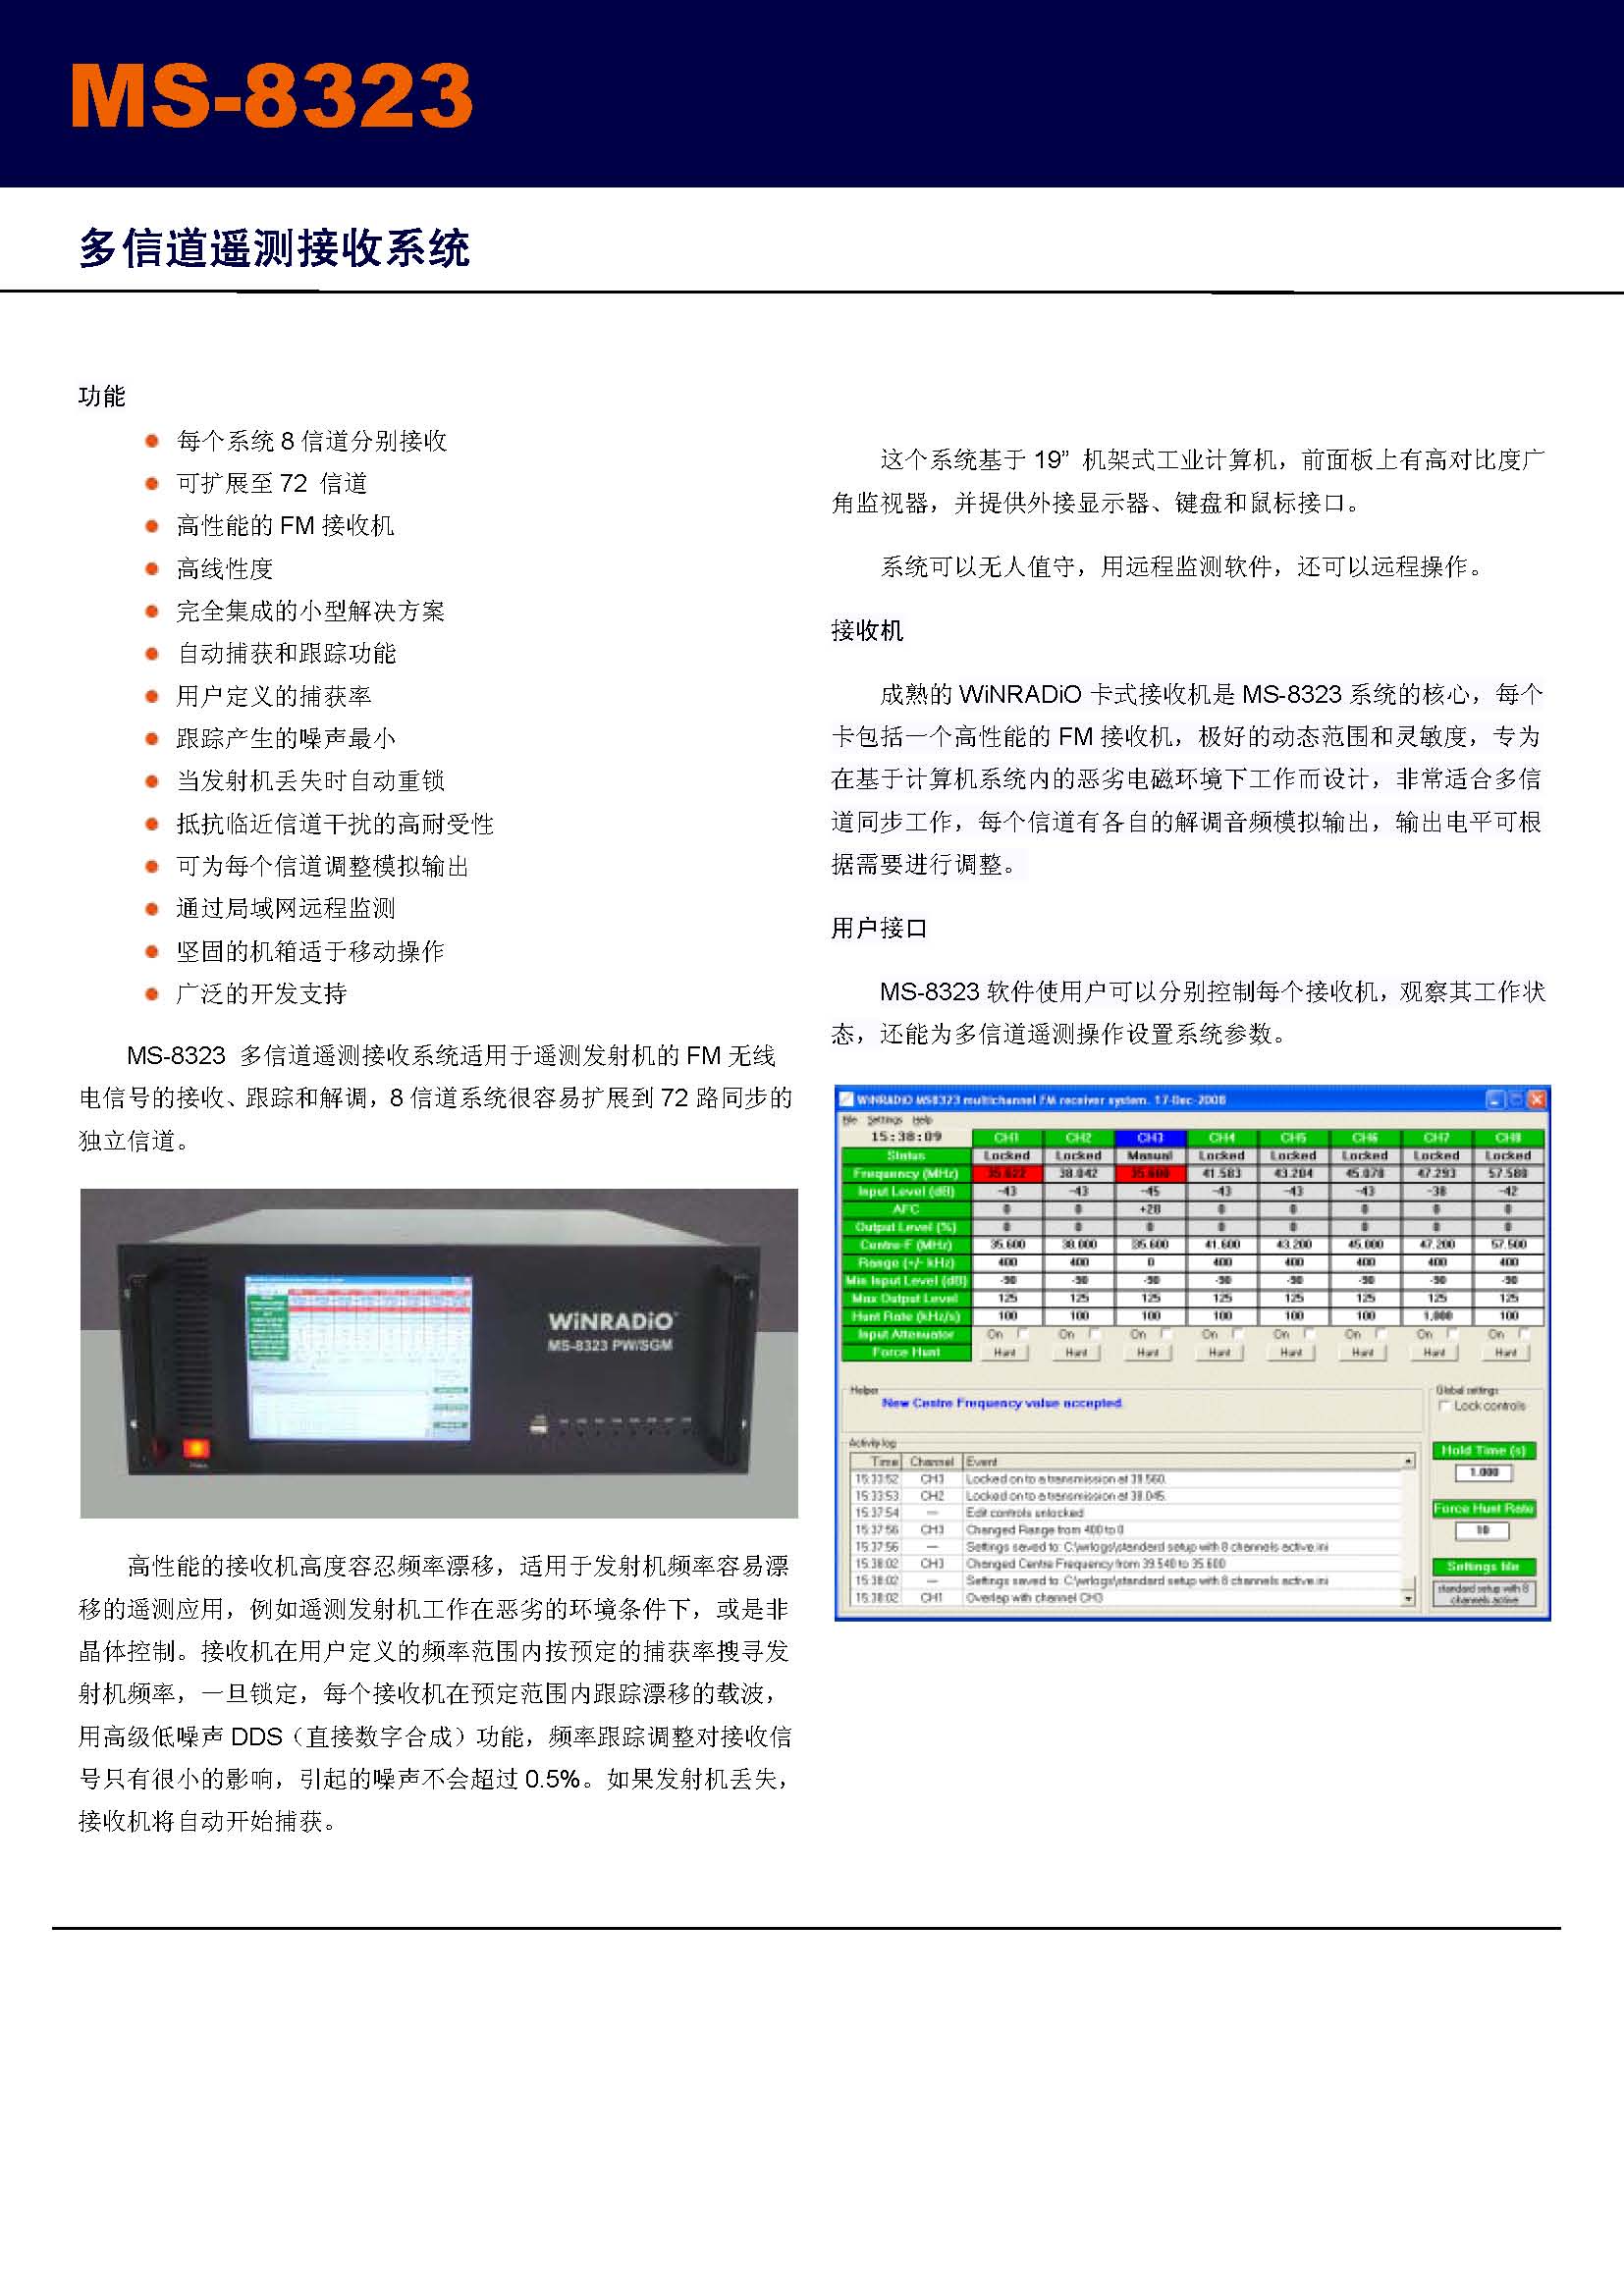 新维电信接收设备产品手册201612_页面_48.jpg